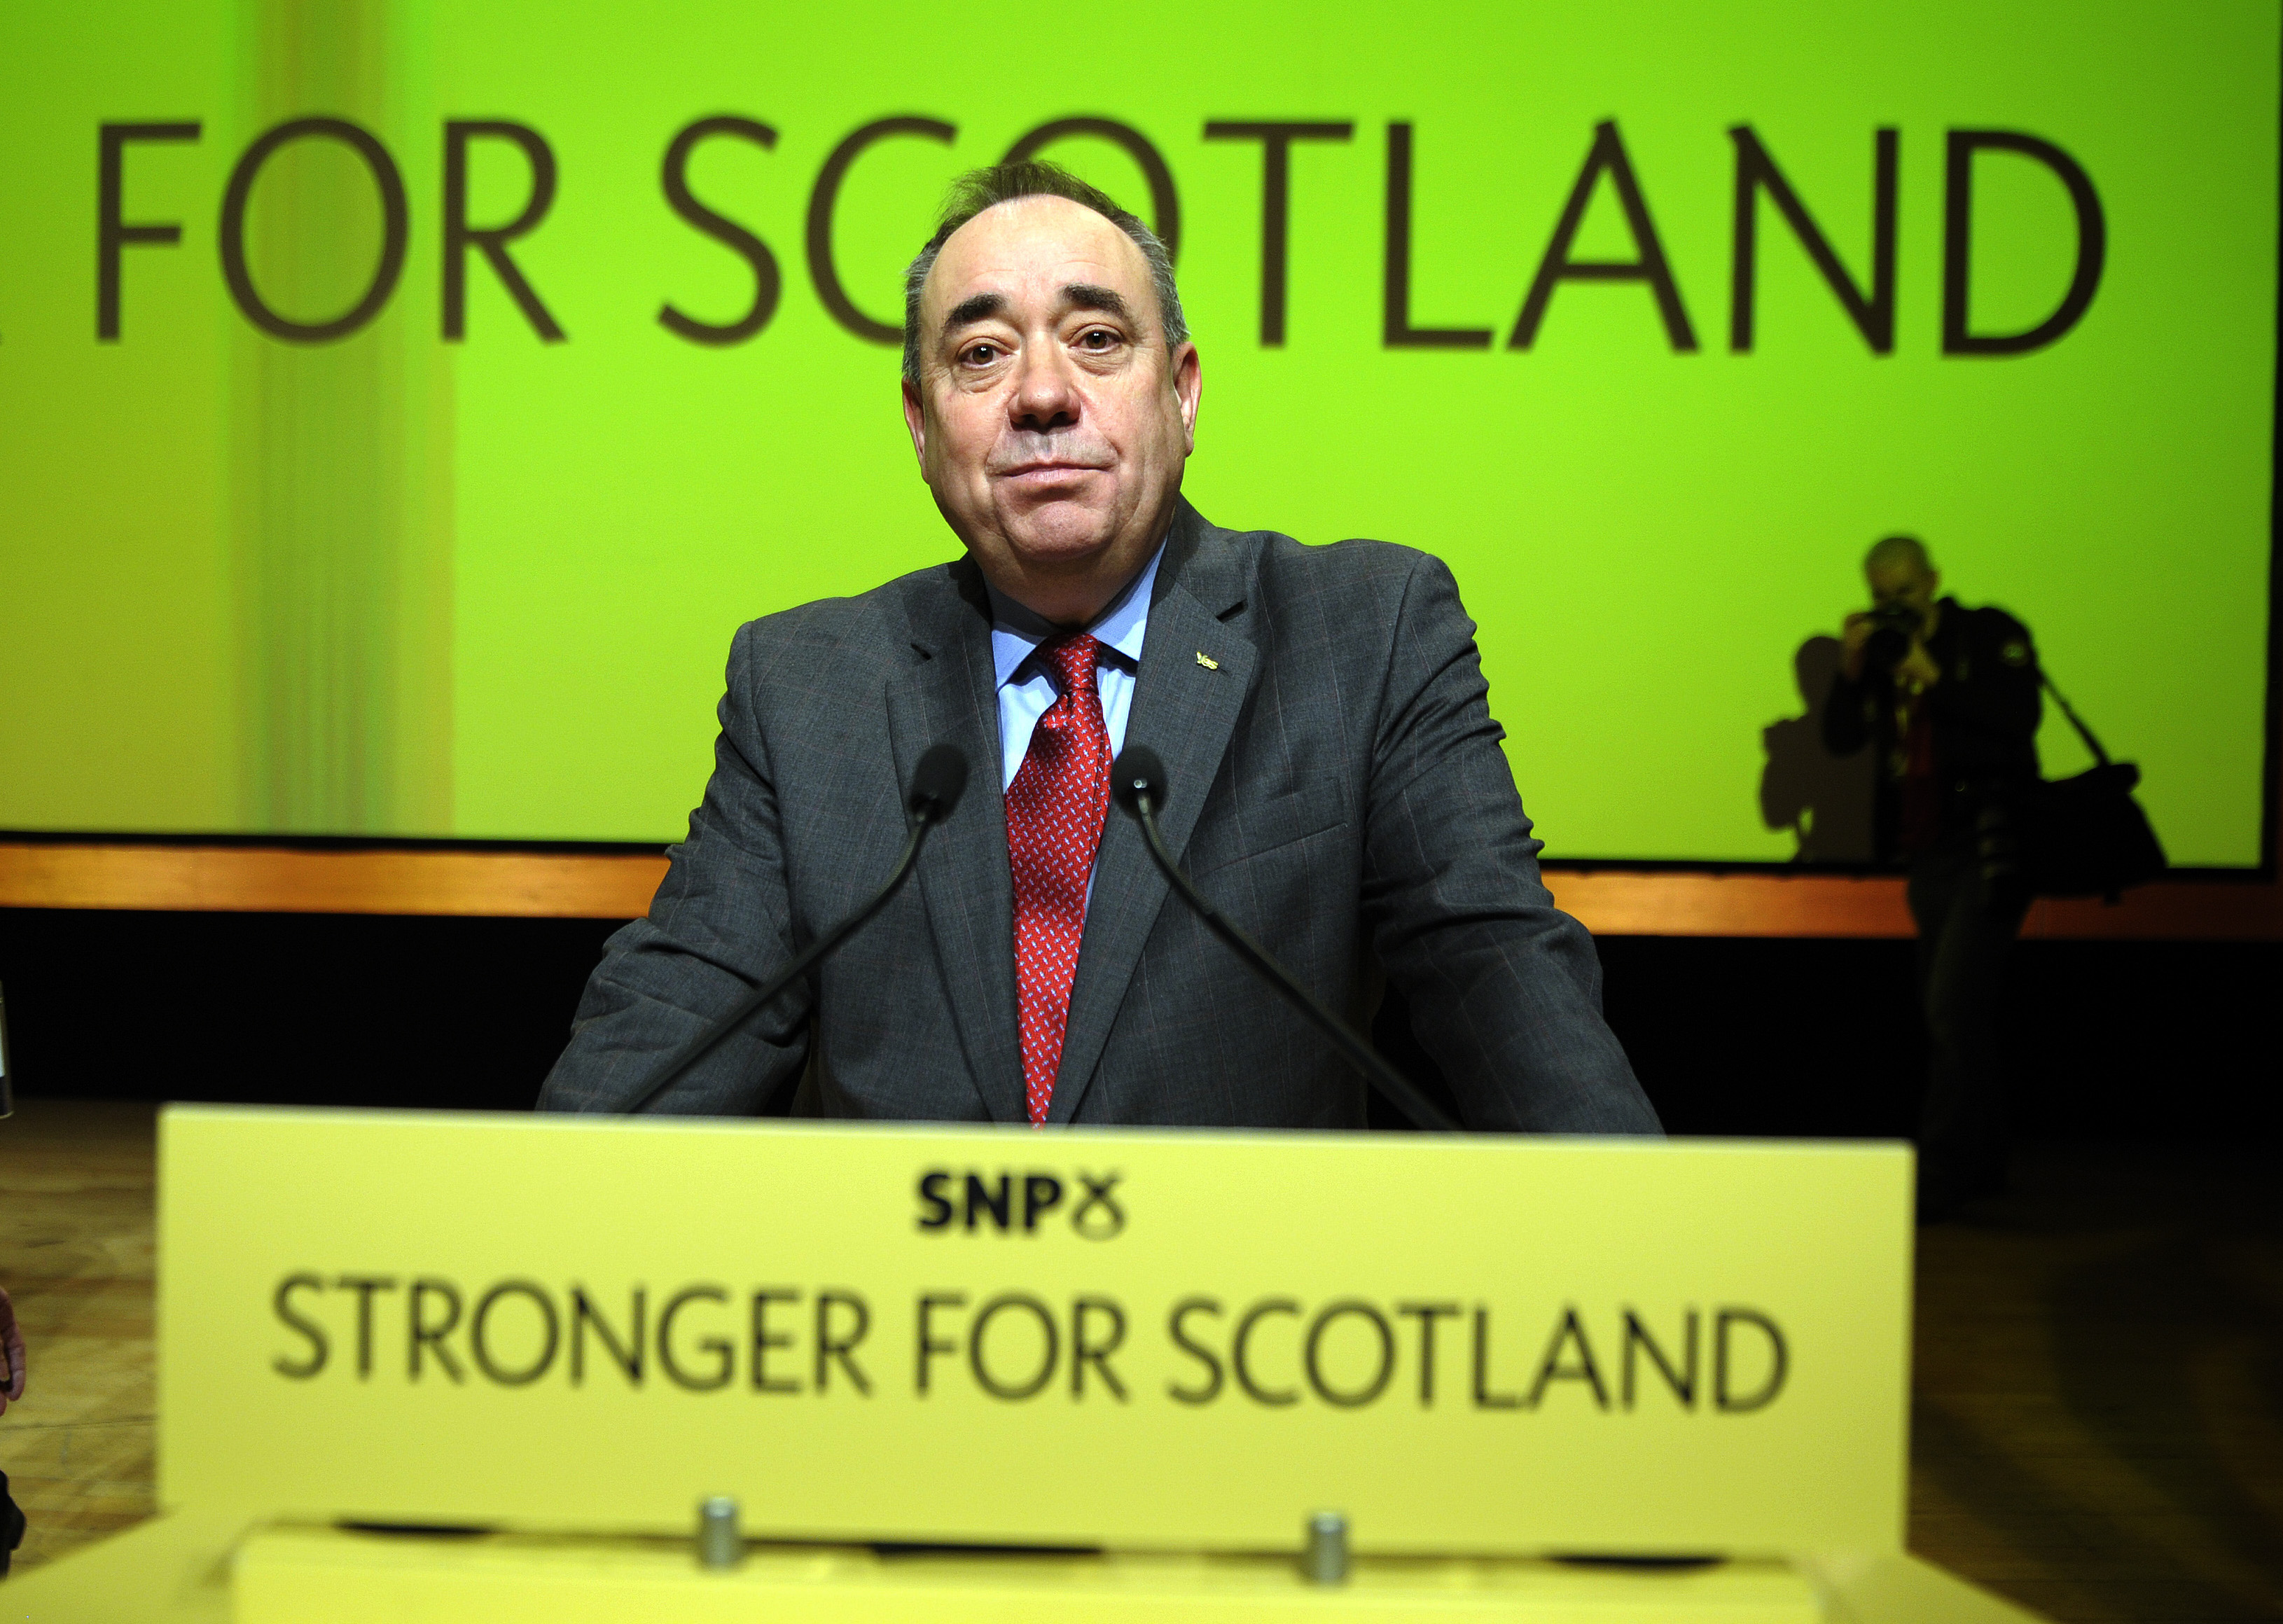 Kilépett a pártjából a korábbi skót miniszterelnök, miután szexuális zaklatással vádolták meg